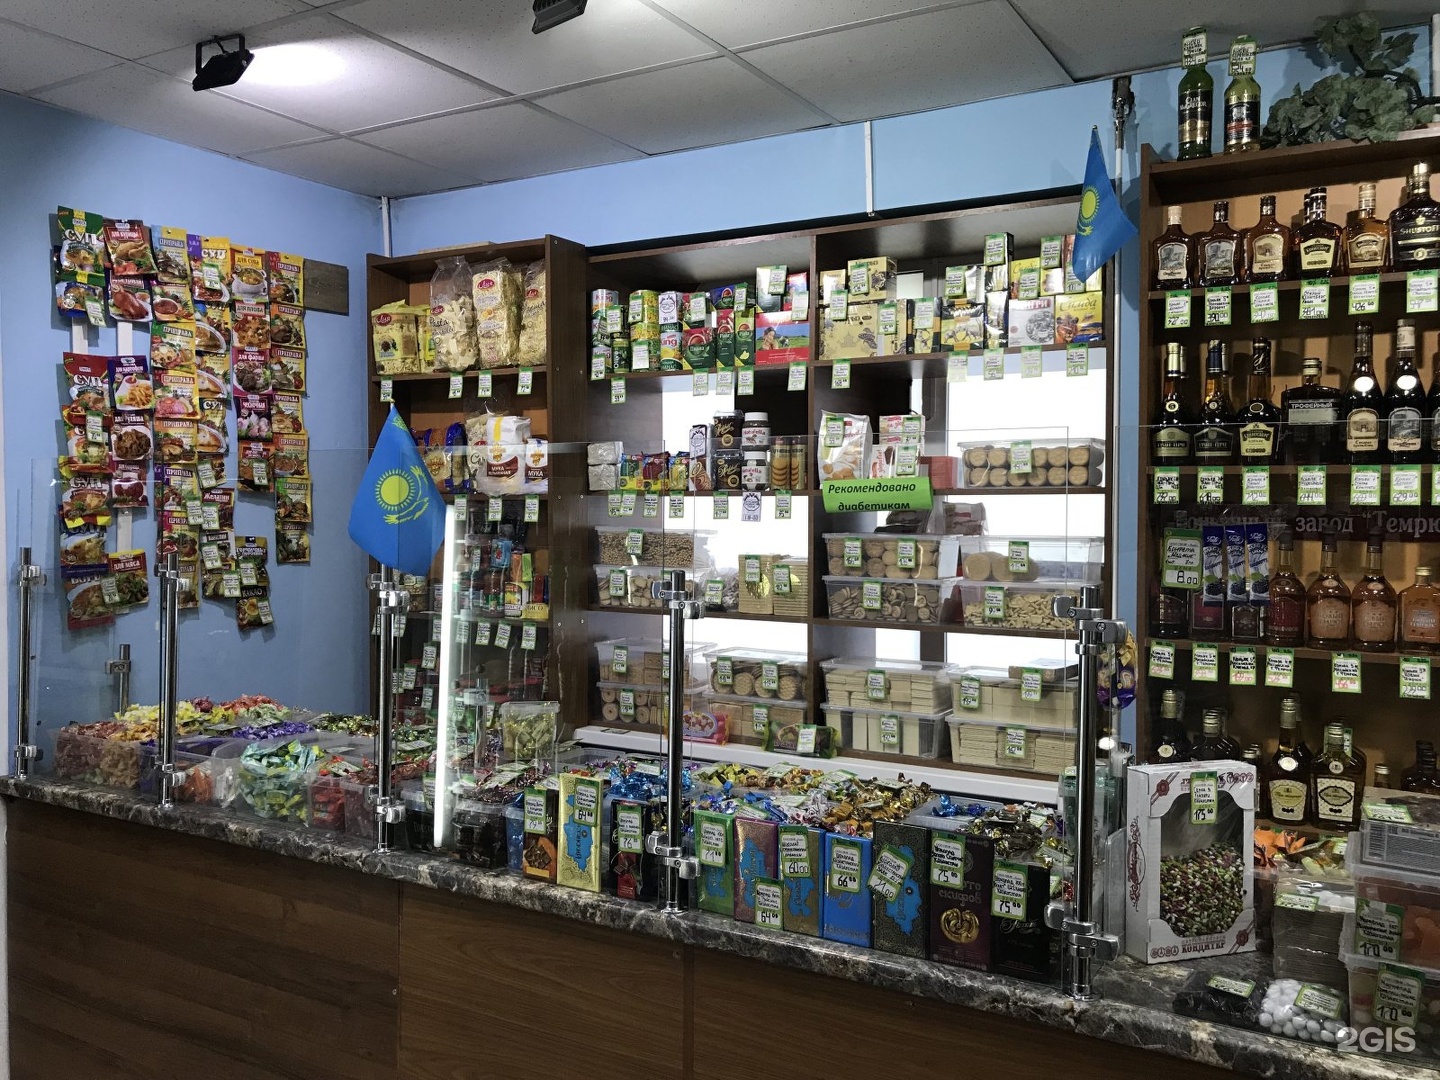 Вина Кубани Магазин Новосибирск